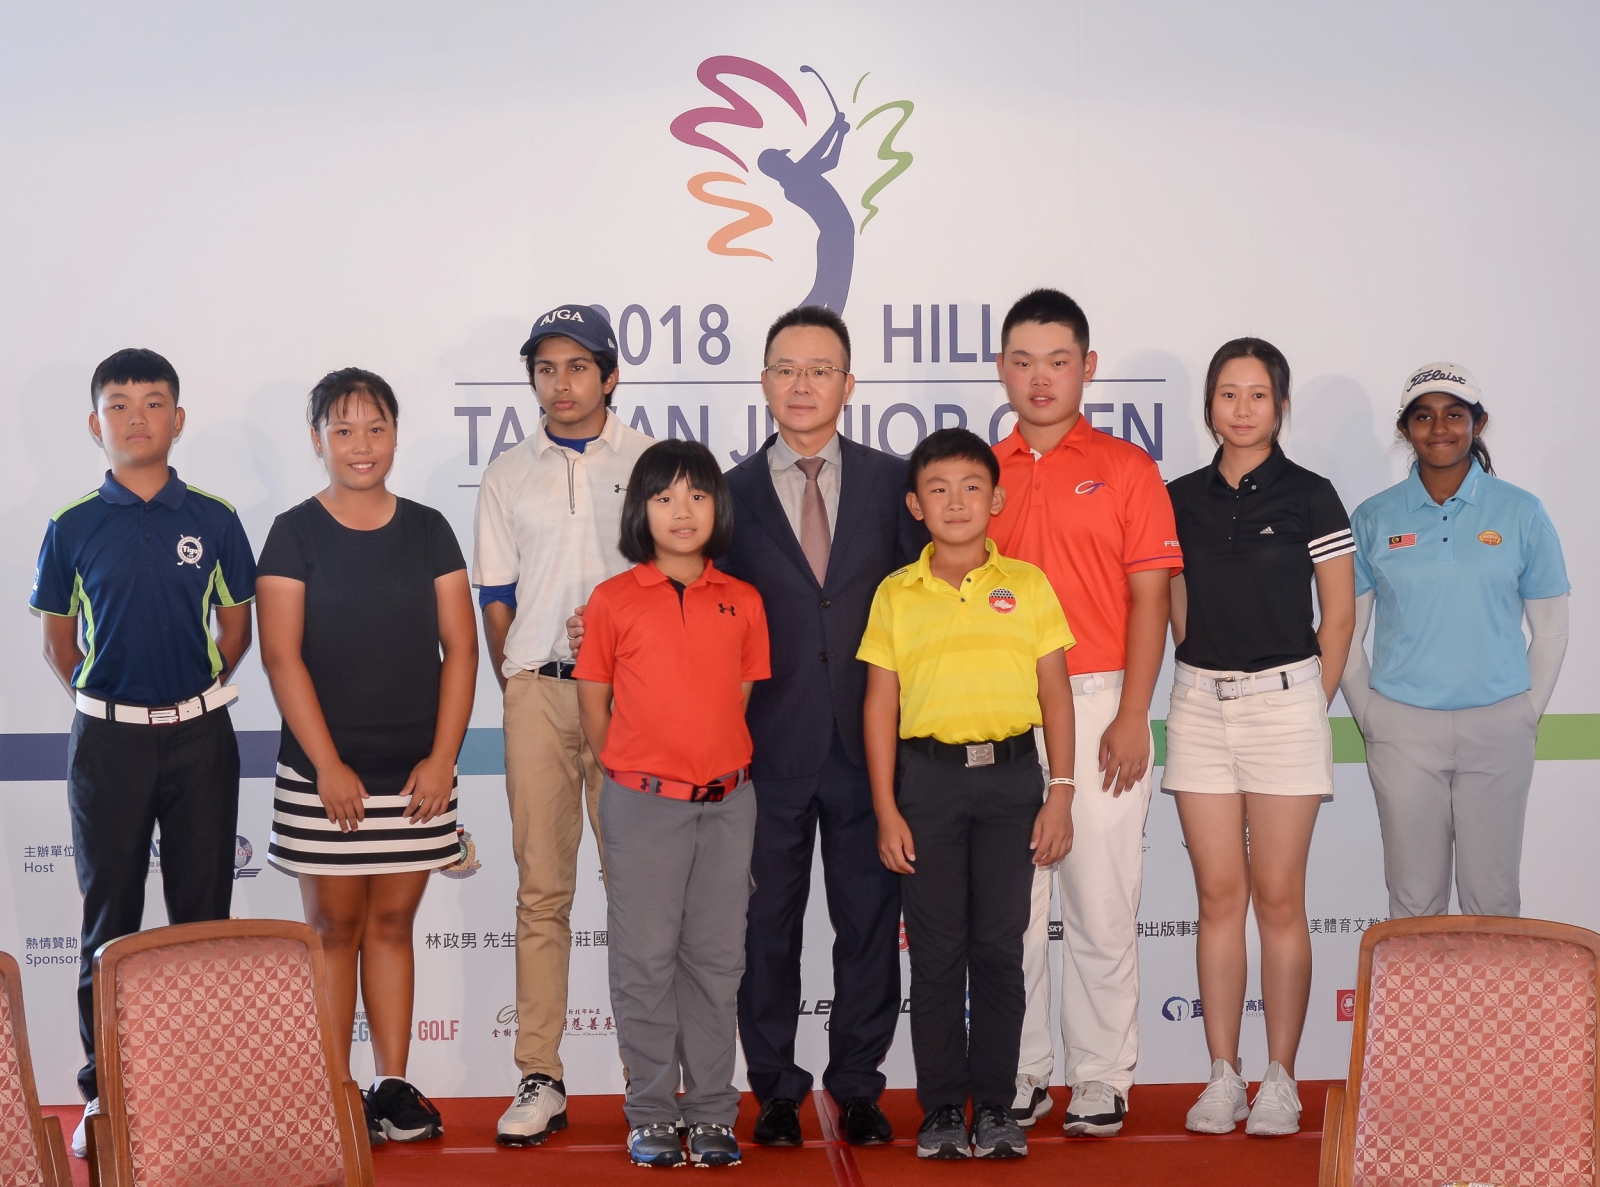 王政松(後排中) 對於青少年高爾夫相當重視，圖攝於2018台灣青少年錦標賽頒獎典禮；王政松也是這項賽事舉辦8年來第一位到場關切的高協理事長。(攝影／鍾豐榮)